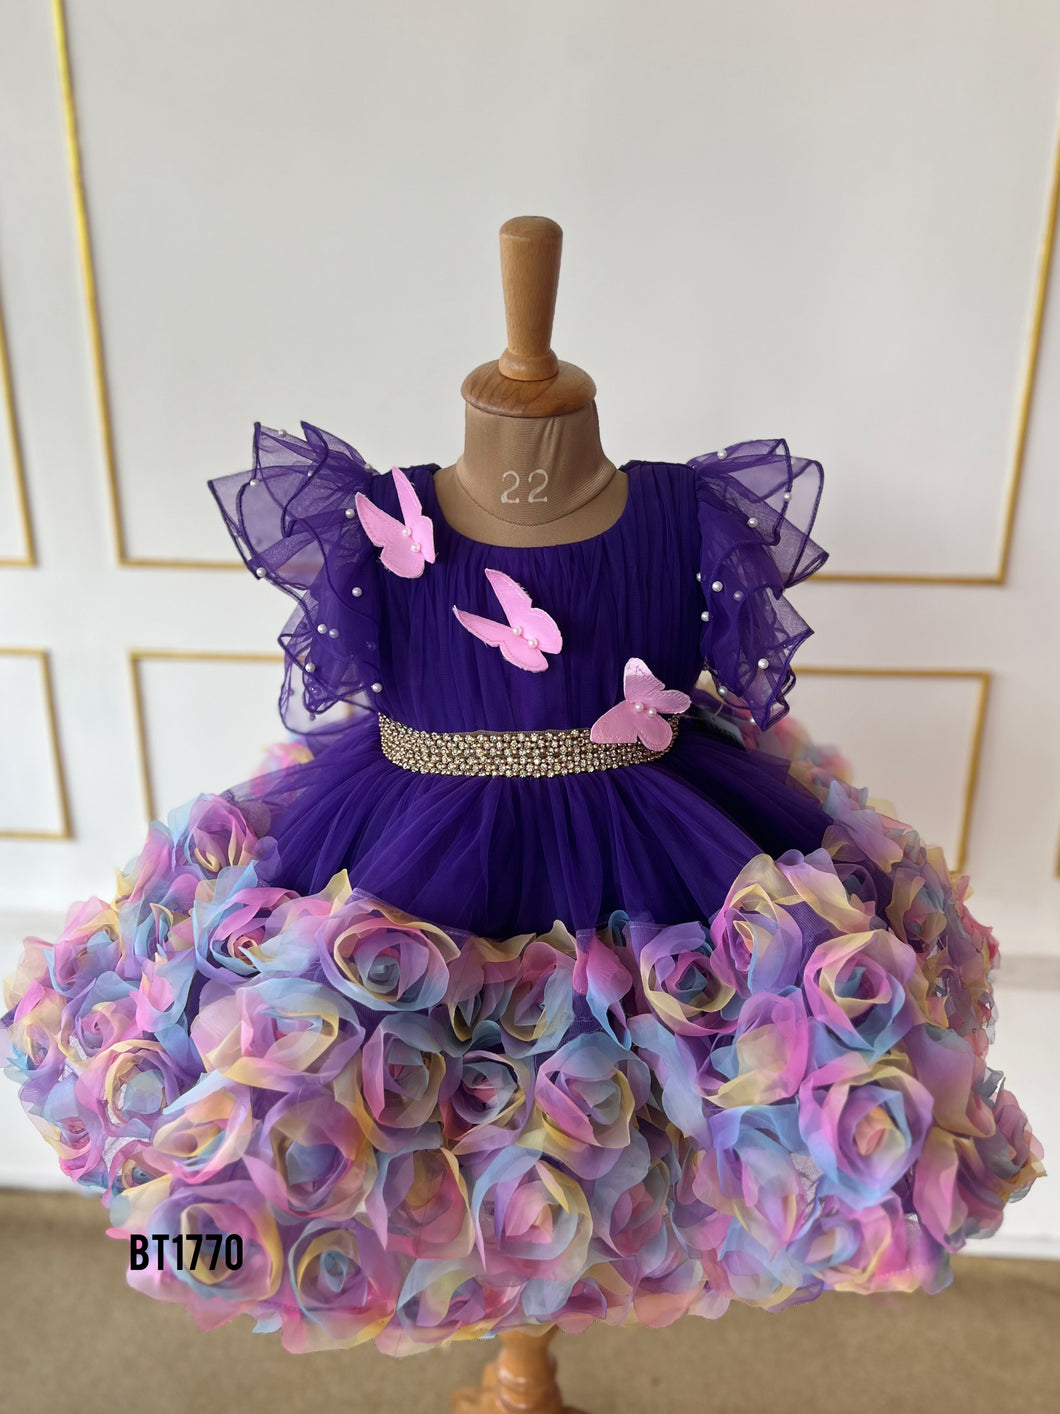 BT1770 Enchanted Garden Flutter Dress for Precious Moments